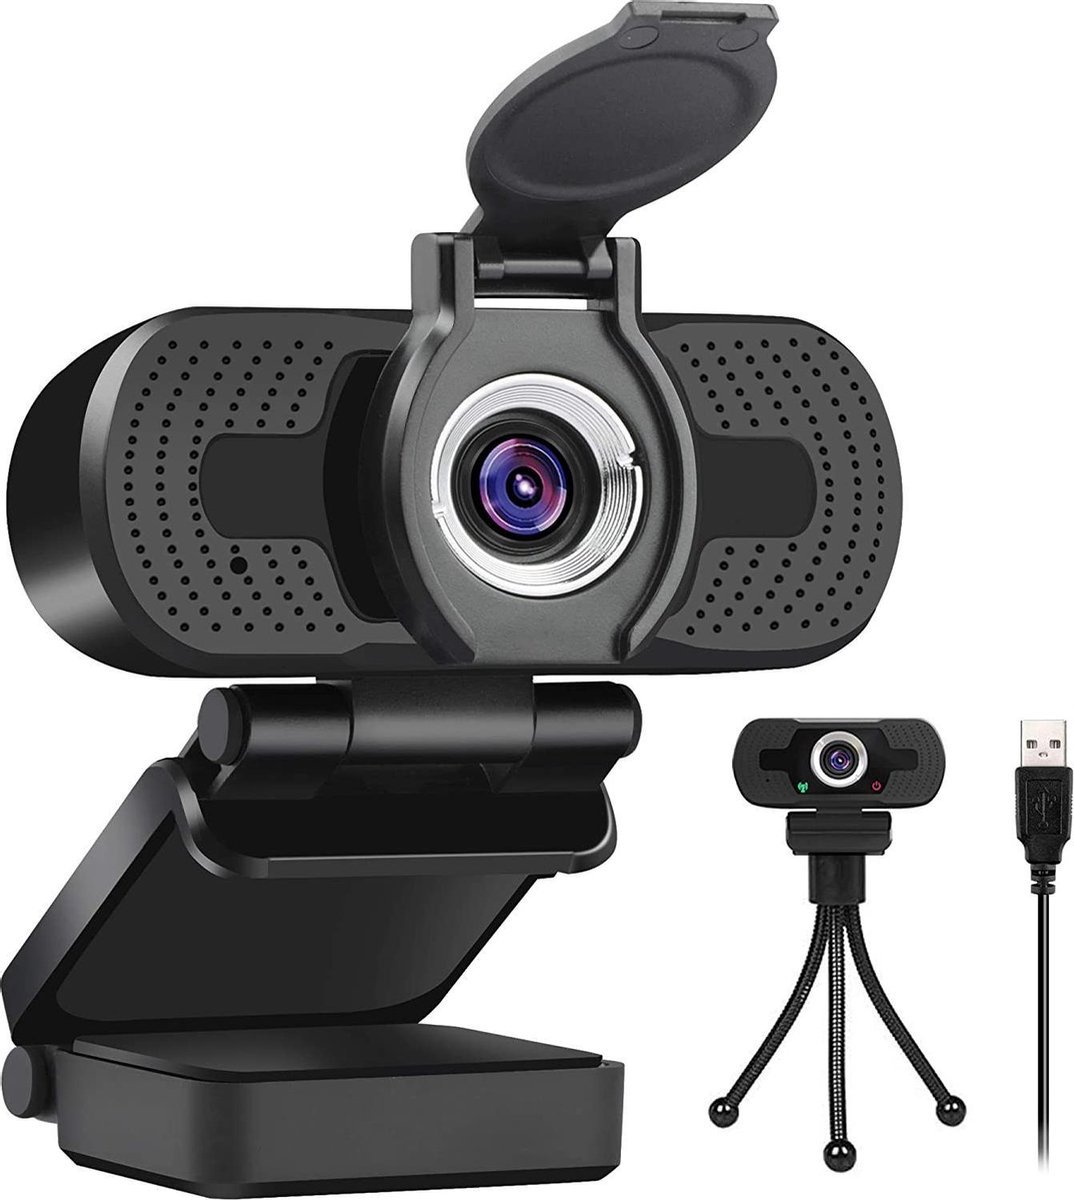 JLM High End Products Webcam voor pc - 1080P Full HD - Webcam met microfoon - Goed Beeld en Geluid